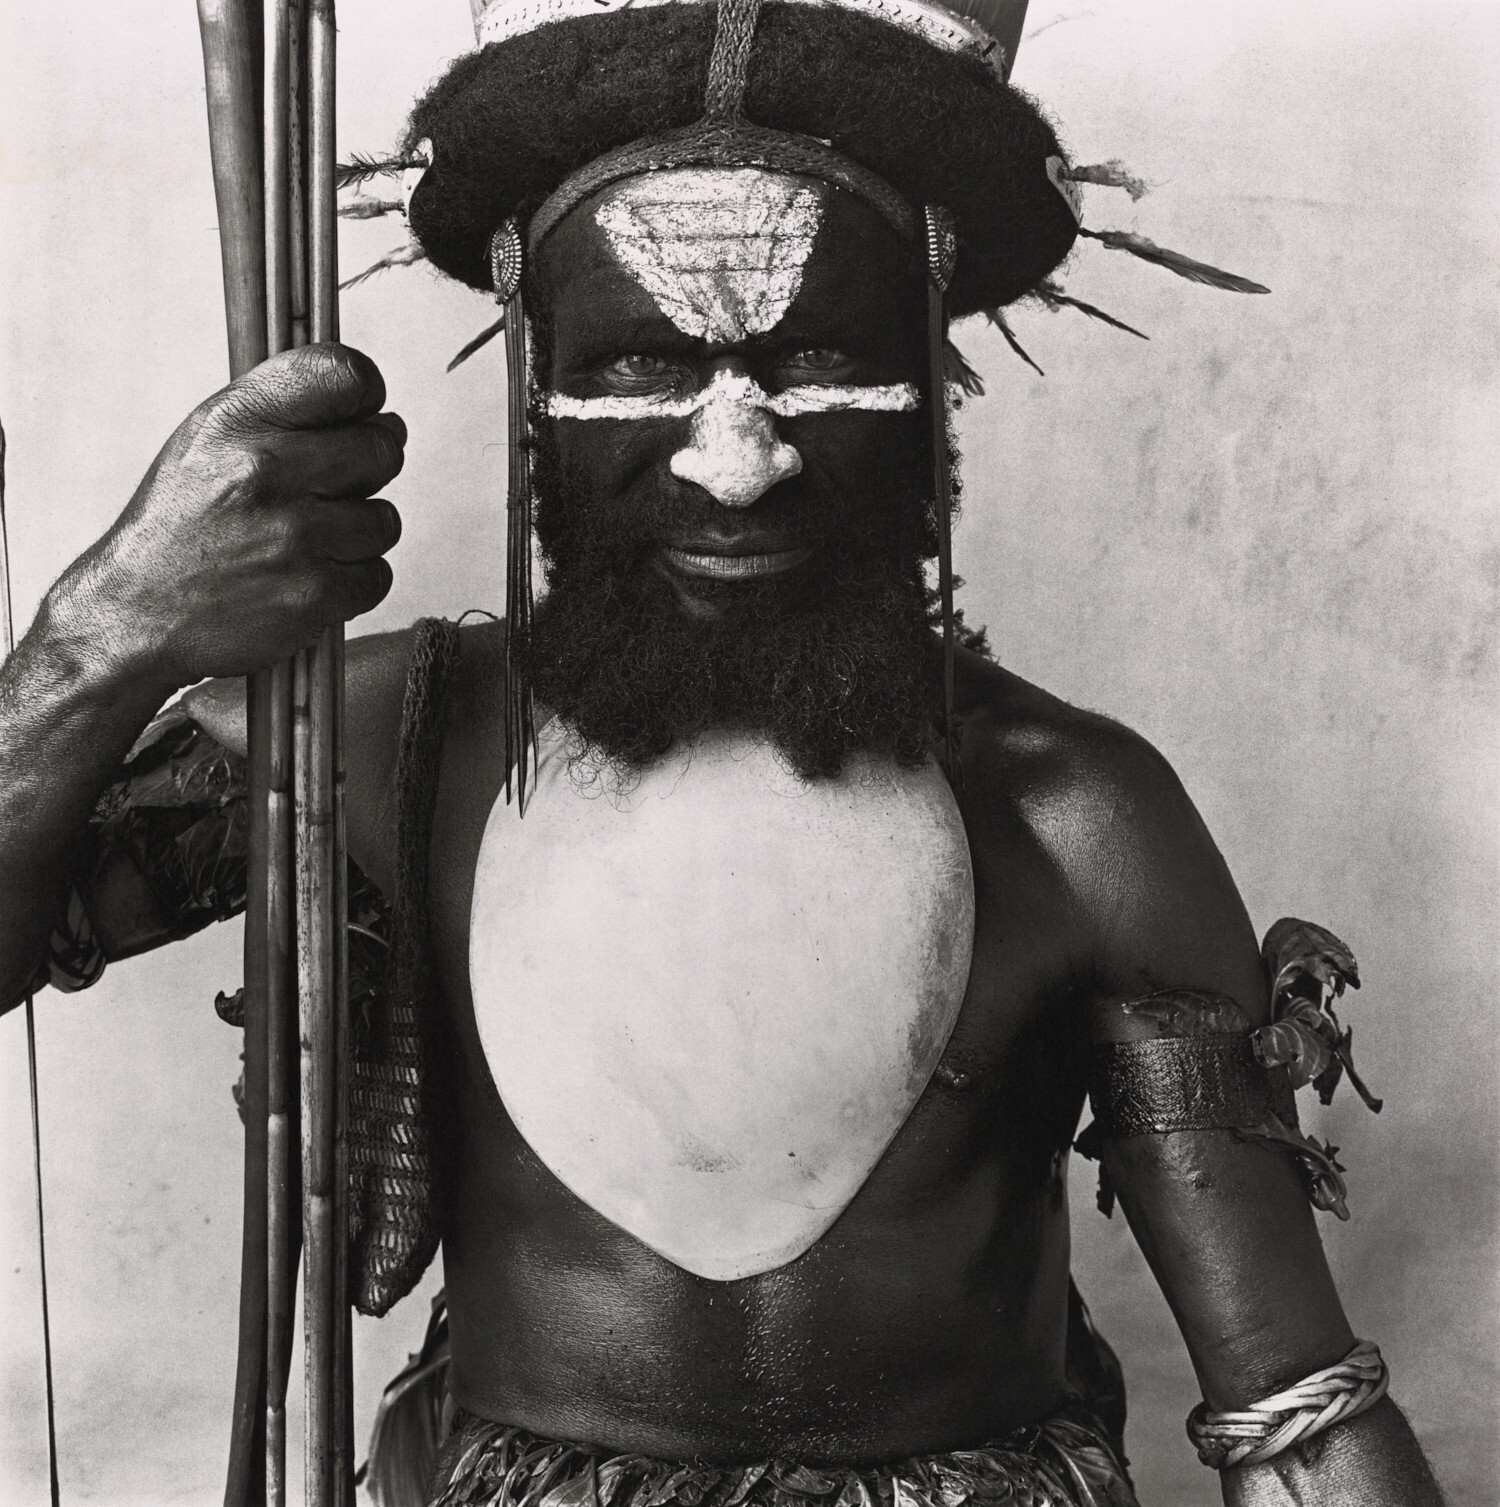 Tambul Warrior, Новая Гвинея, 1970 г. Фотограф Ирвин Пенн